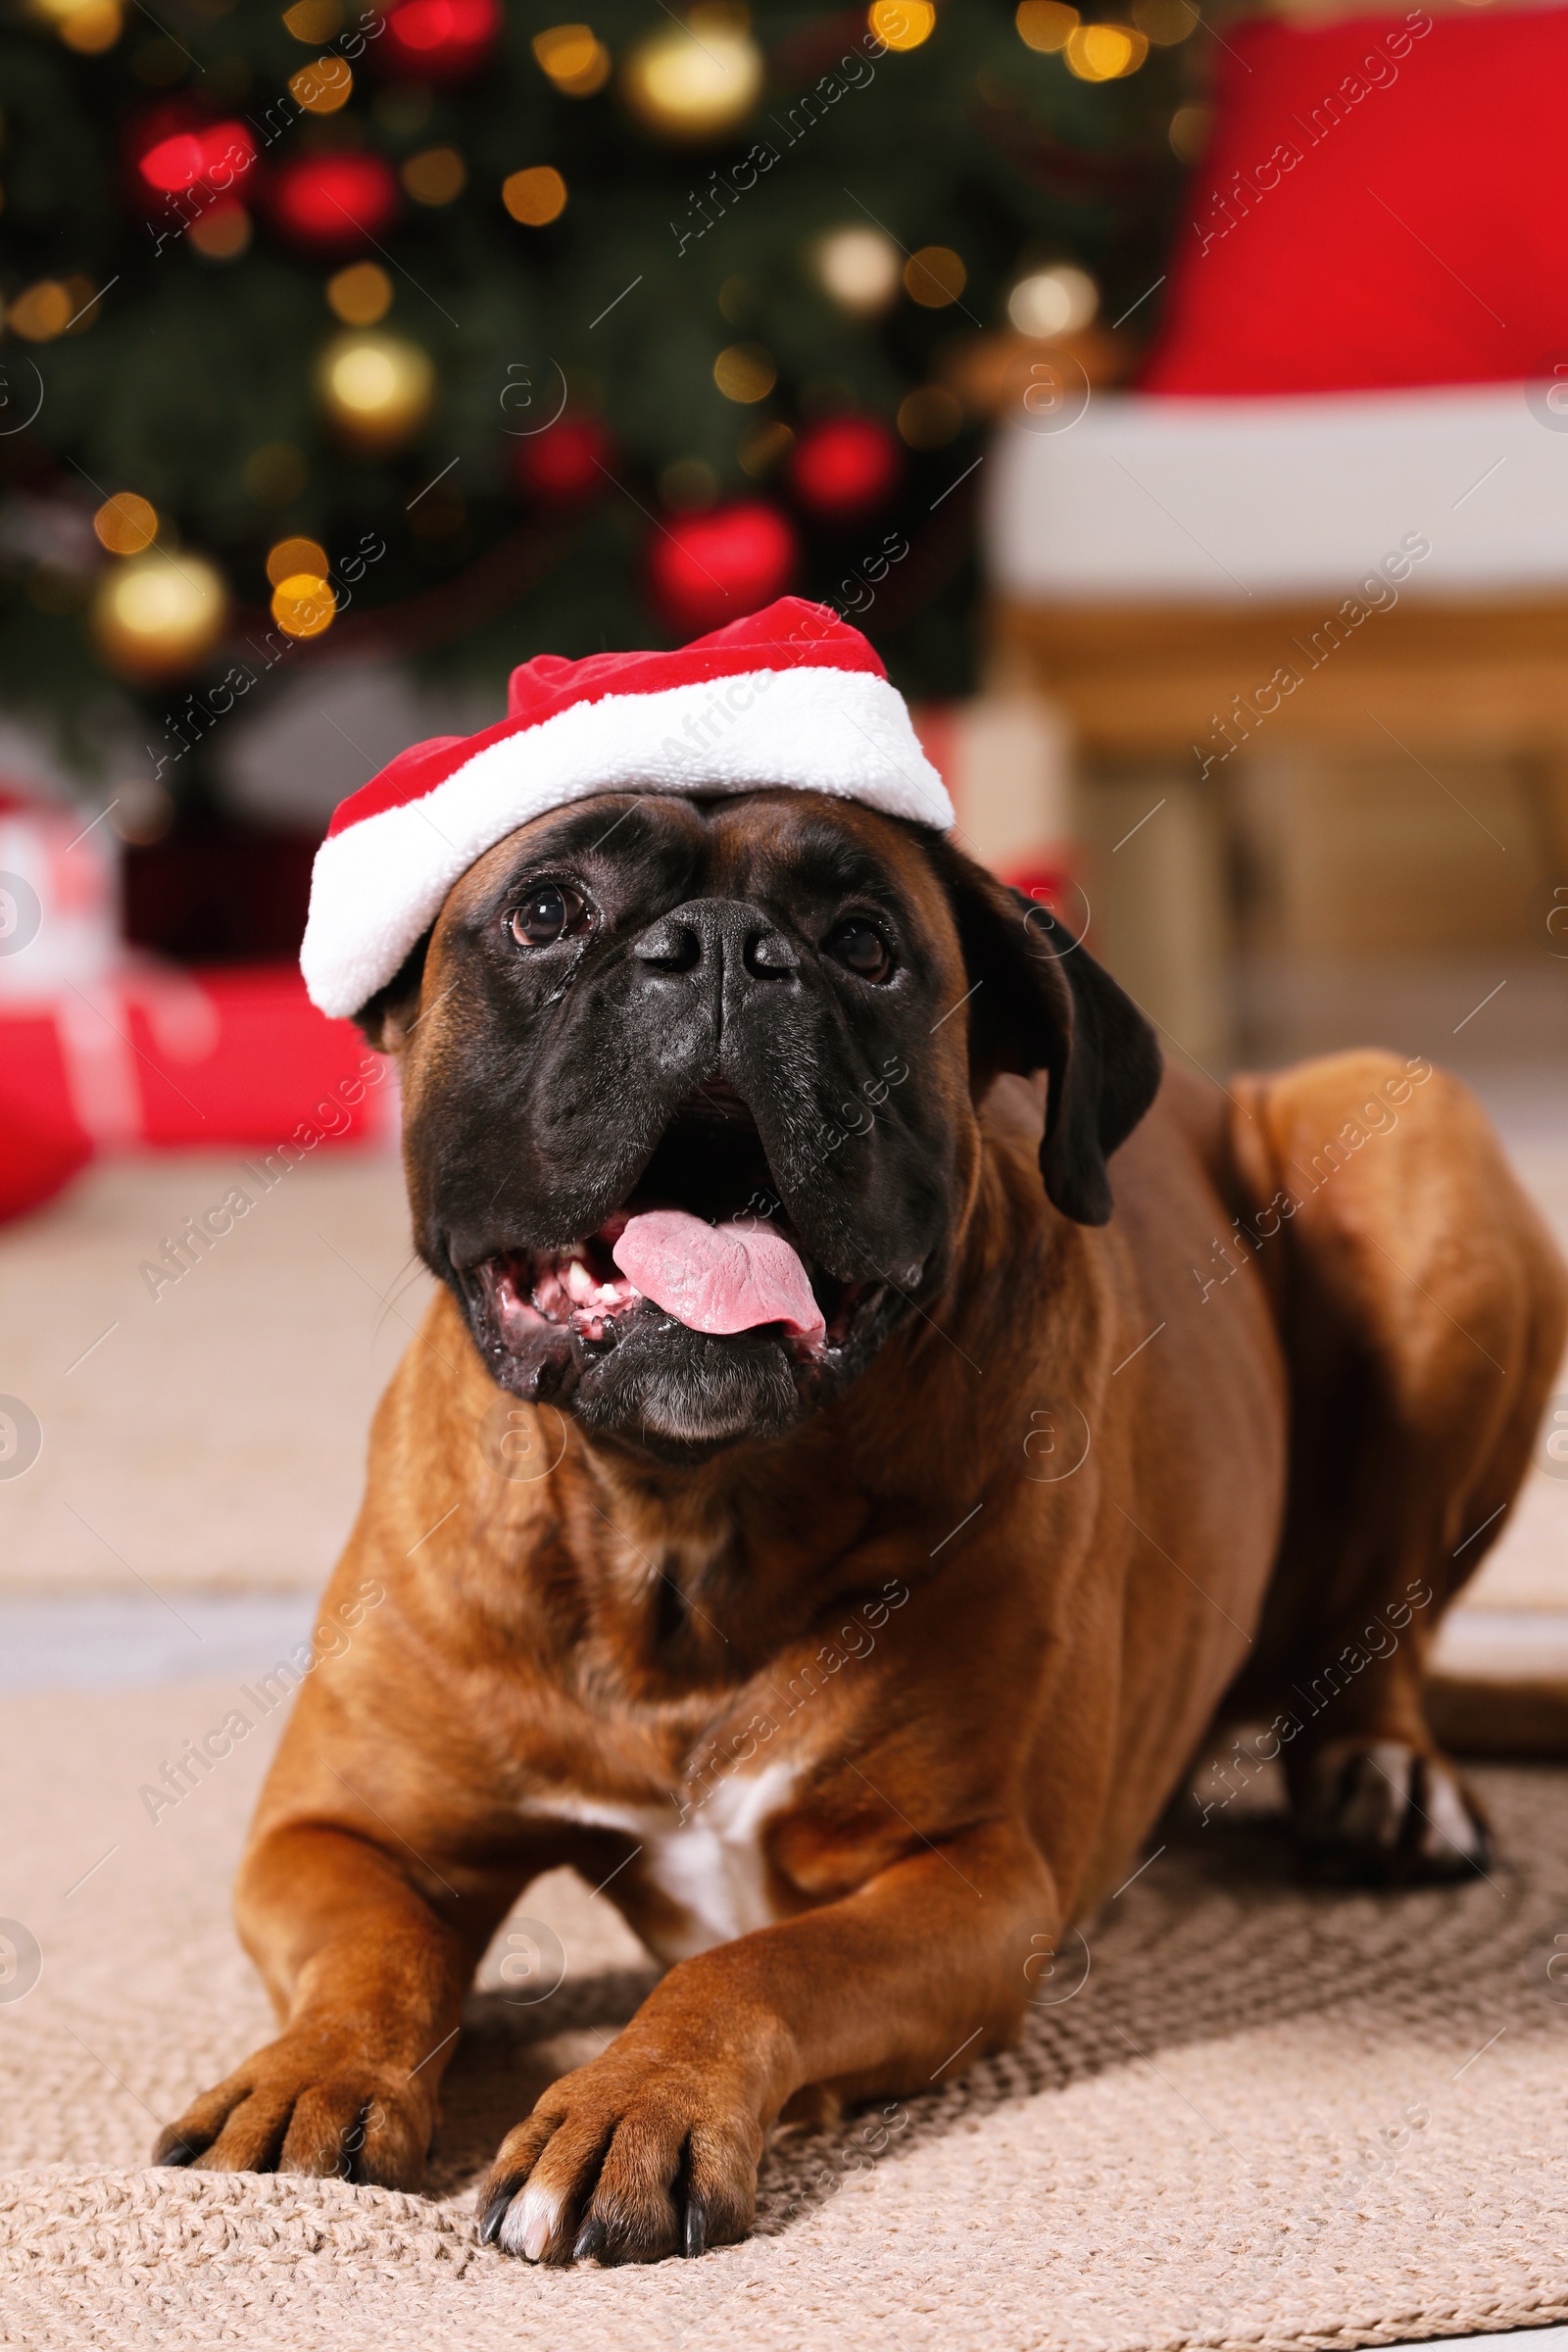 Photo of Cute dog wearing small Santa hat at home